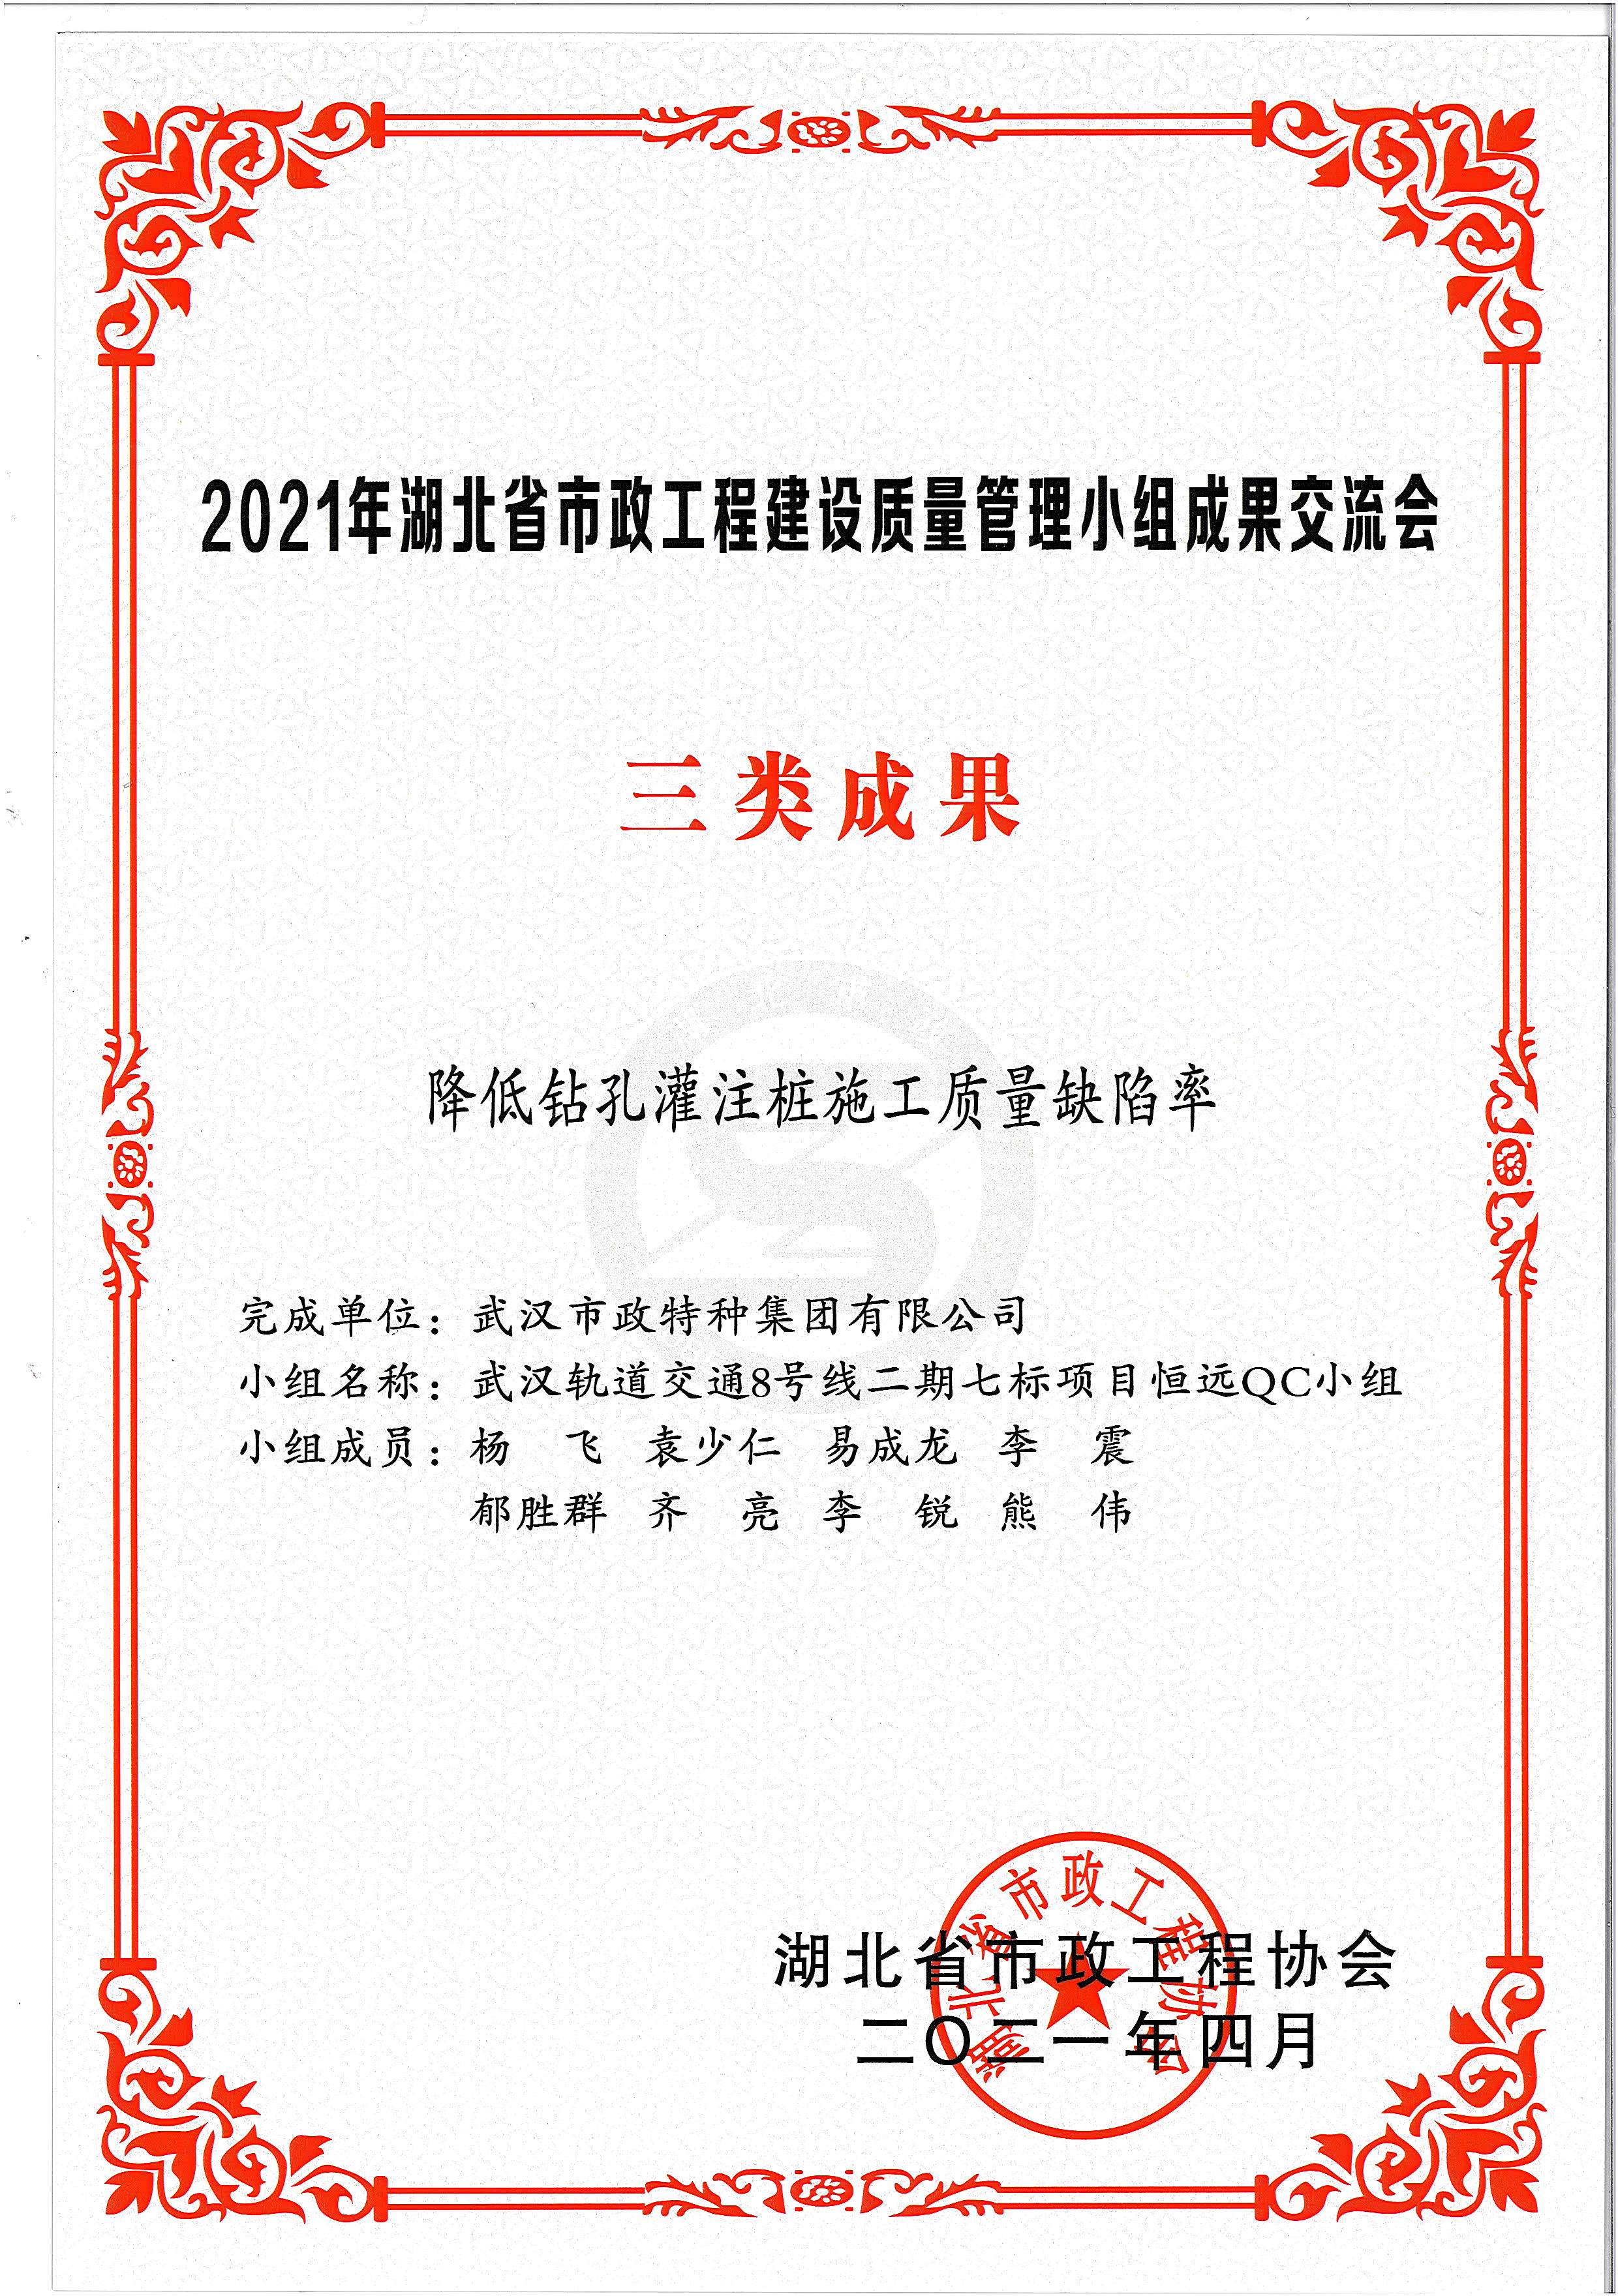 湖北省市政協會QC成果獎——降低鉆孔灌注樁施工質量缺陷率